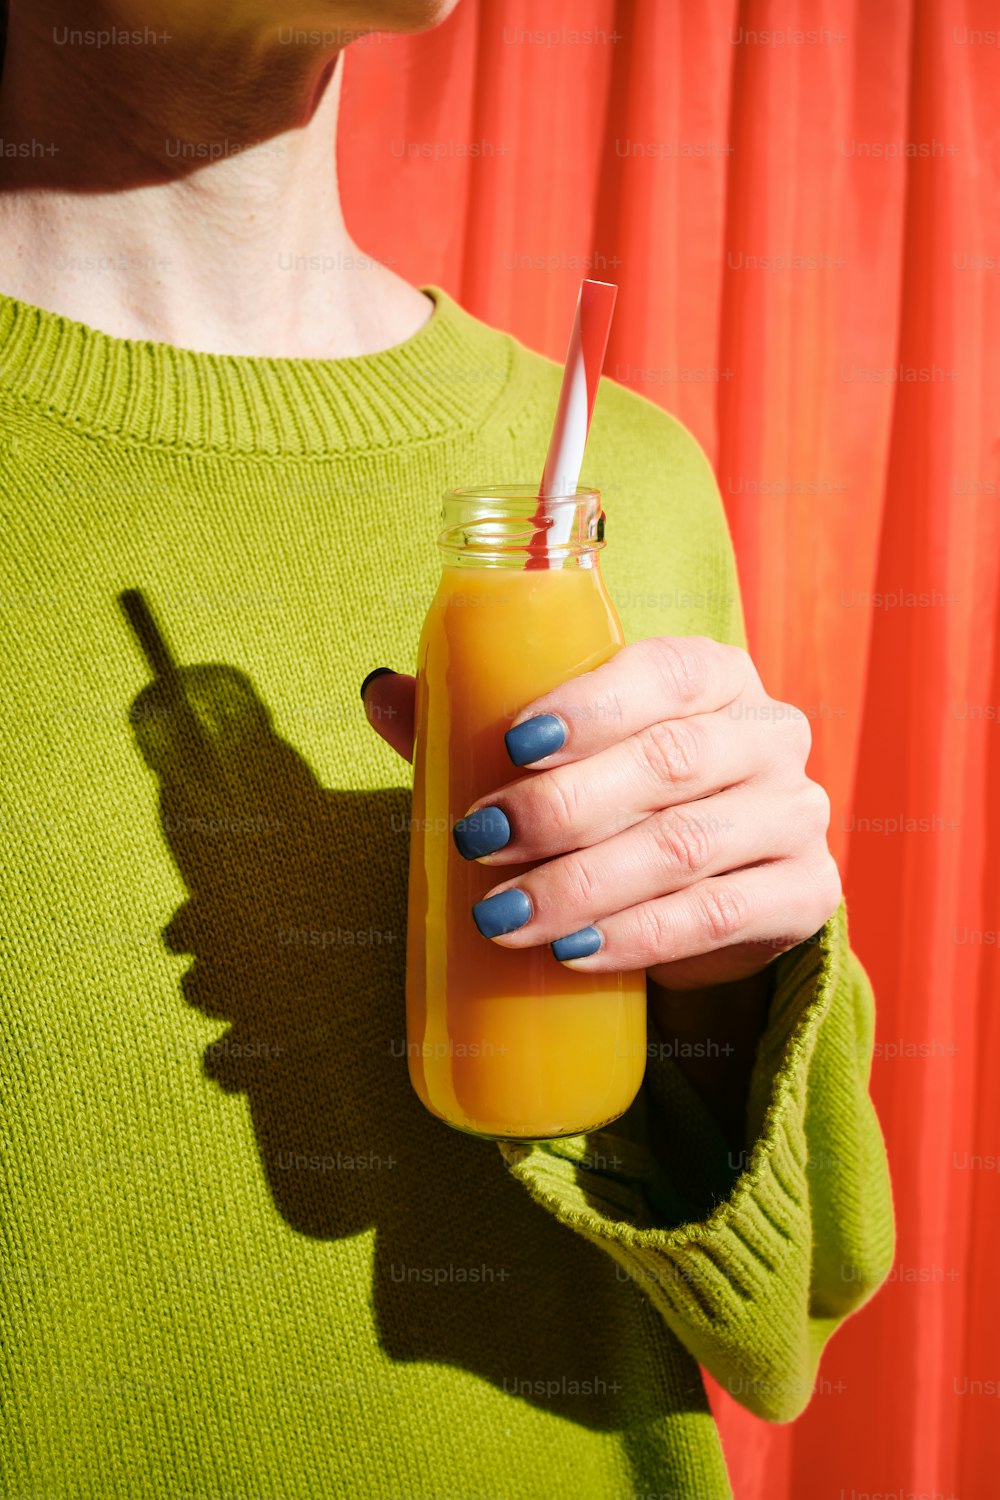 オレンジジュースの入ったグラスを手にした緑色のセーターを着た女性